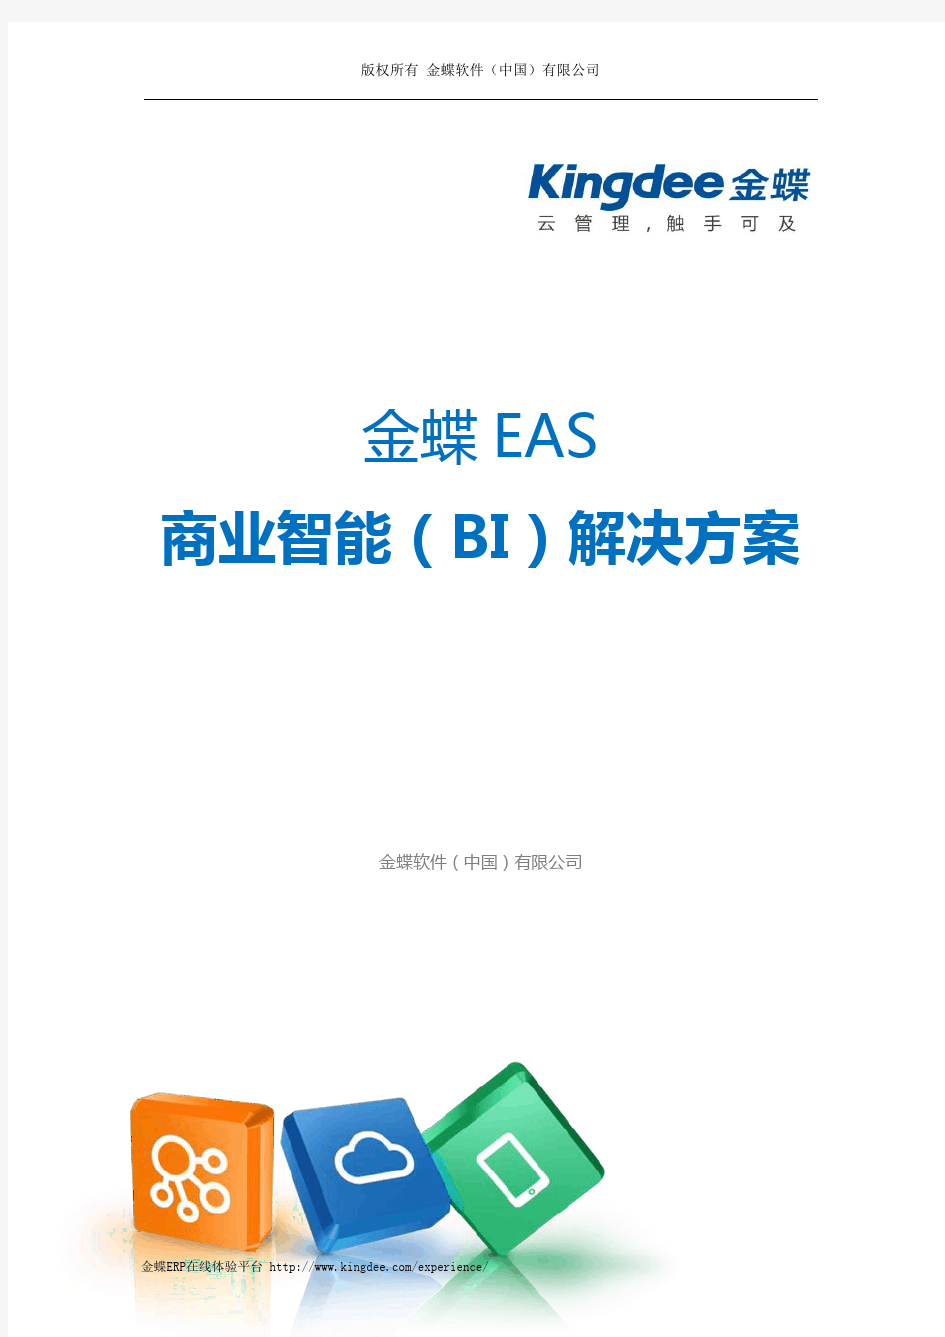 金蝶 EAS 商业智能(BI)解决方案